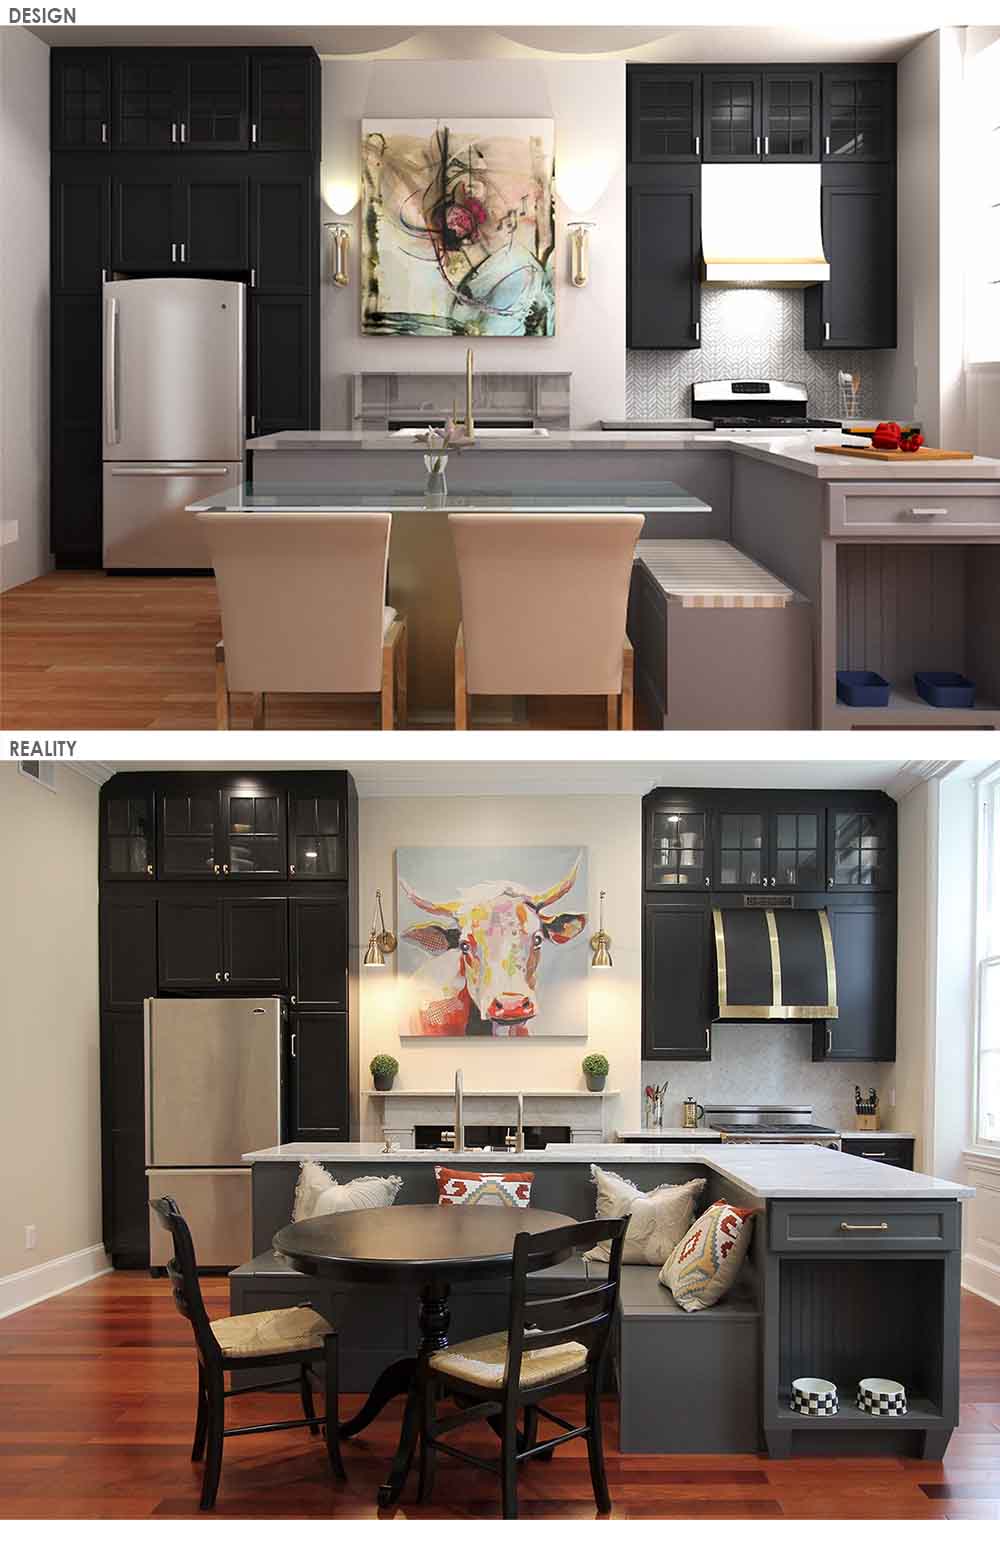 dremodeling-kitchen-remodel-Design-After